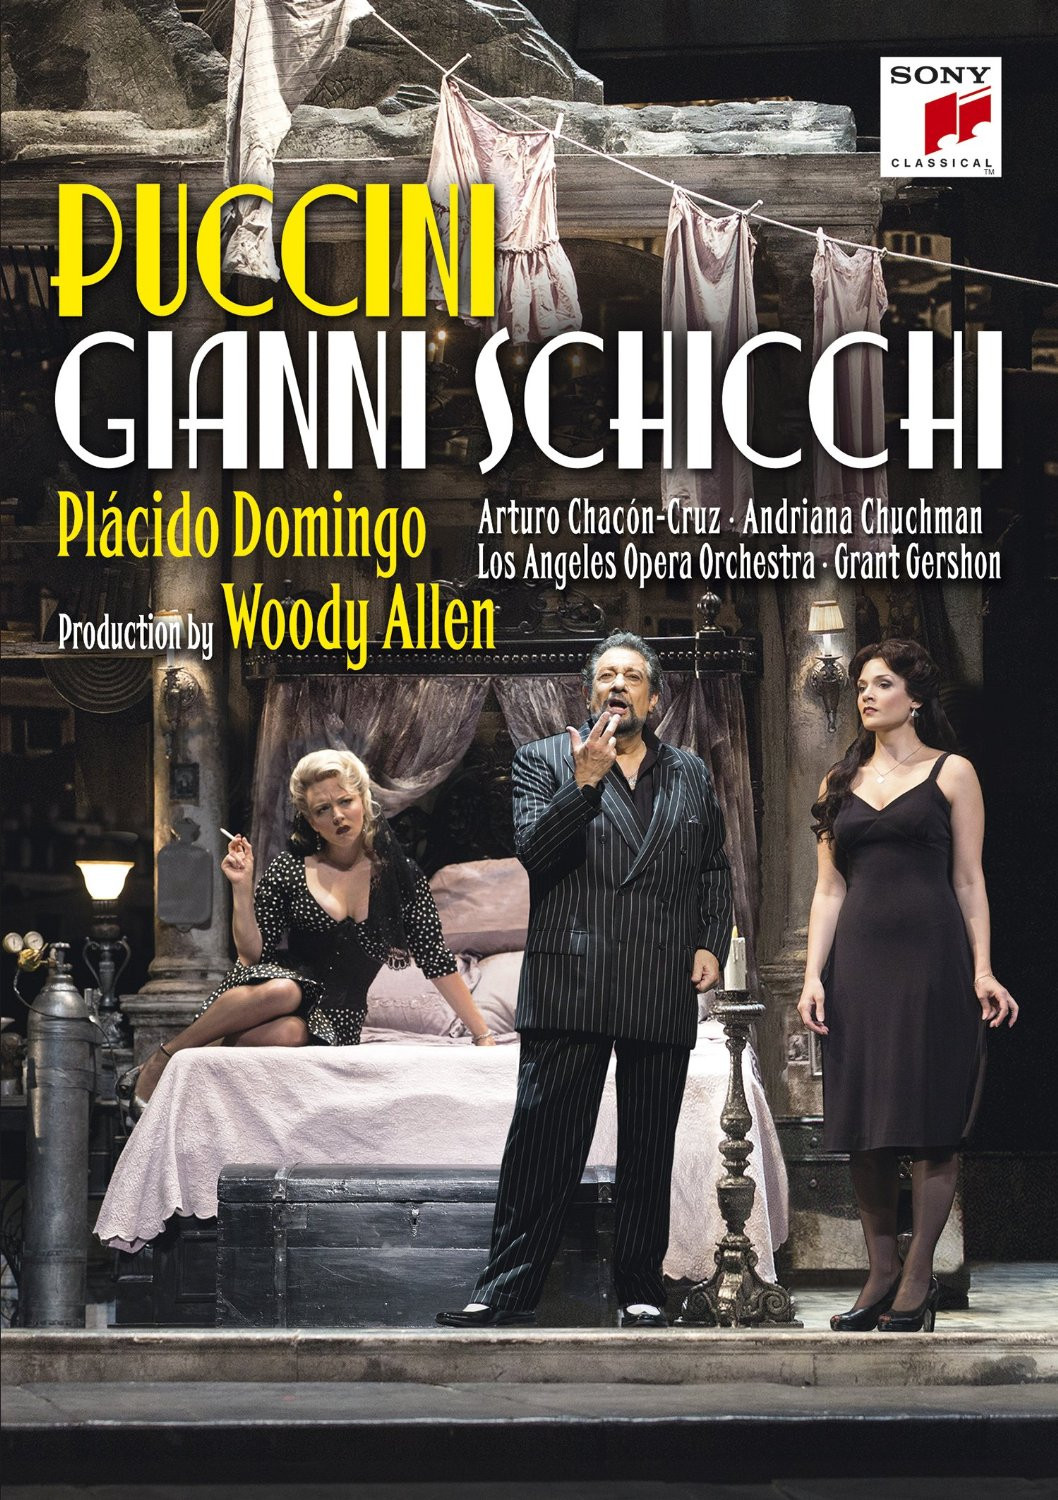 DVD Puccini - Gianni Schicchi - Placido Domingo, Andriana Chuchman, Arturo Chacon-Cruz